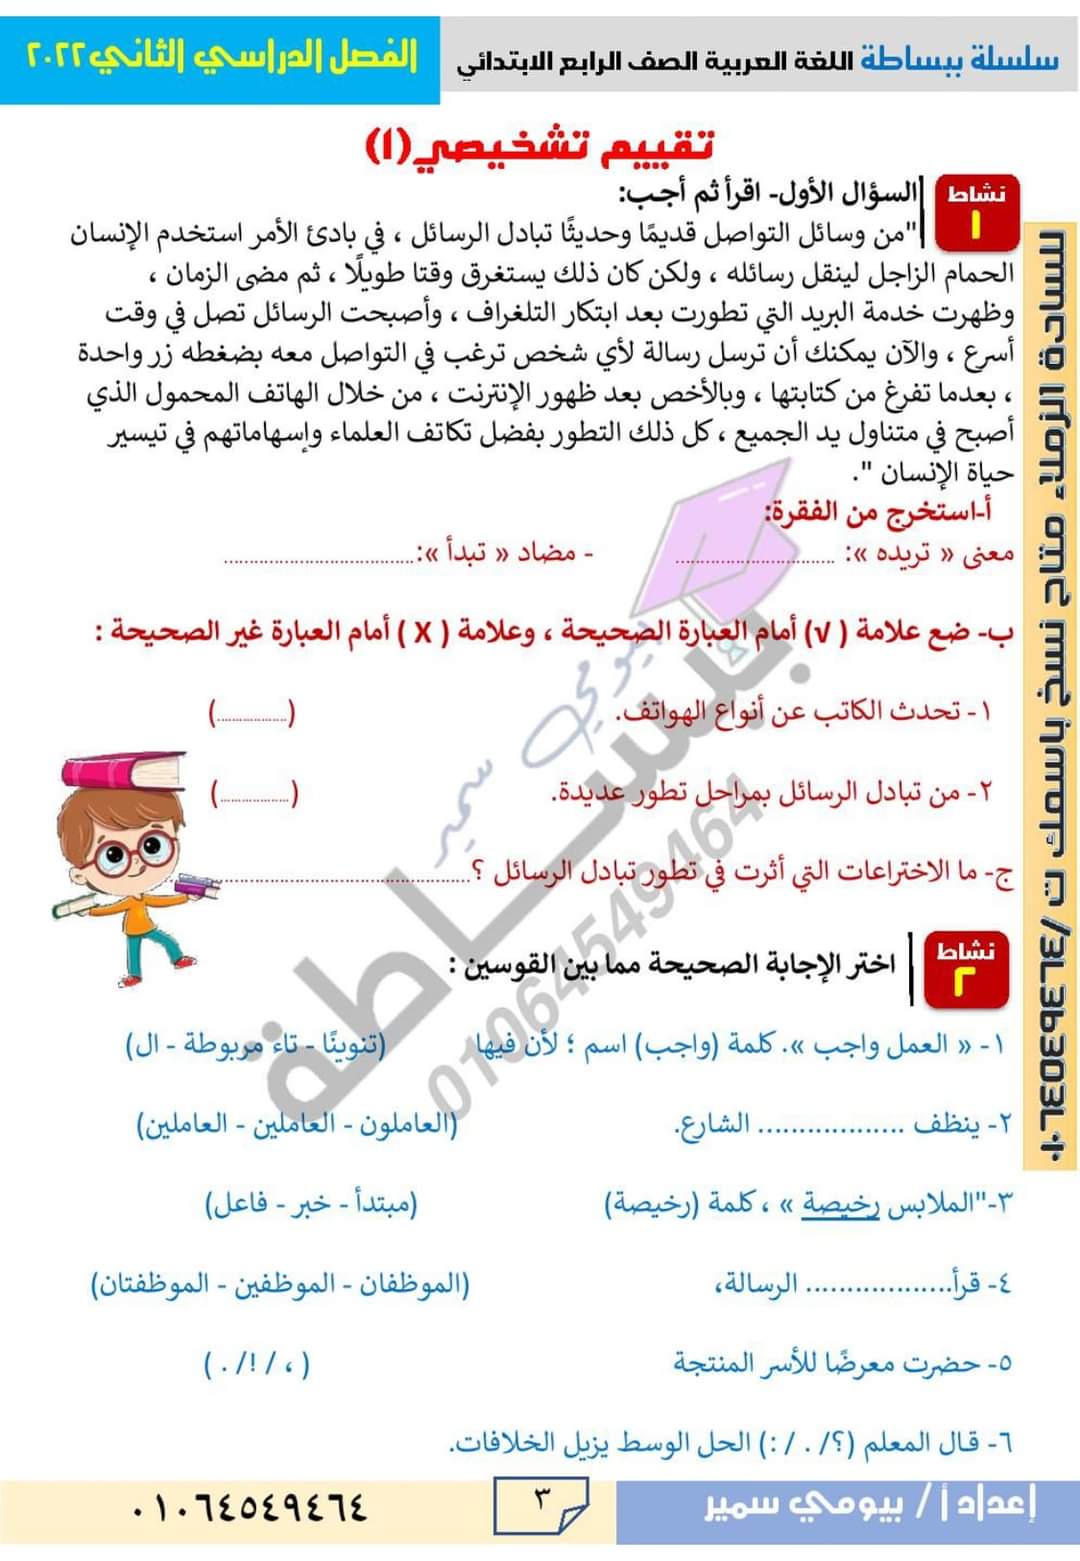 مذكرة لغة عربية الصف الرابع الابتدائي الترم الثاني - بيومي سمير